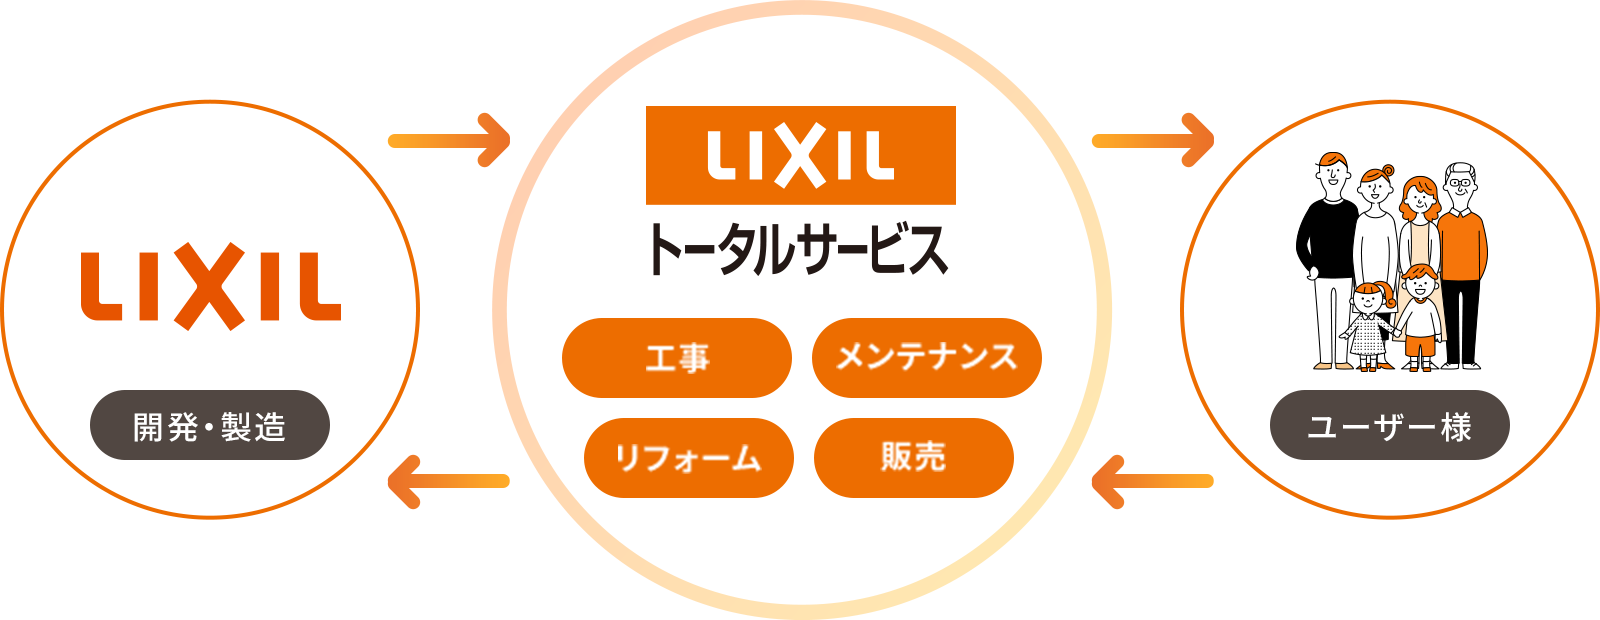 LIXILトータルサービスのビジネスフロー